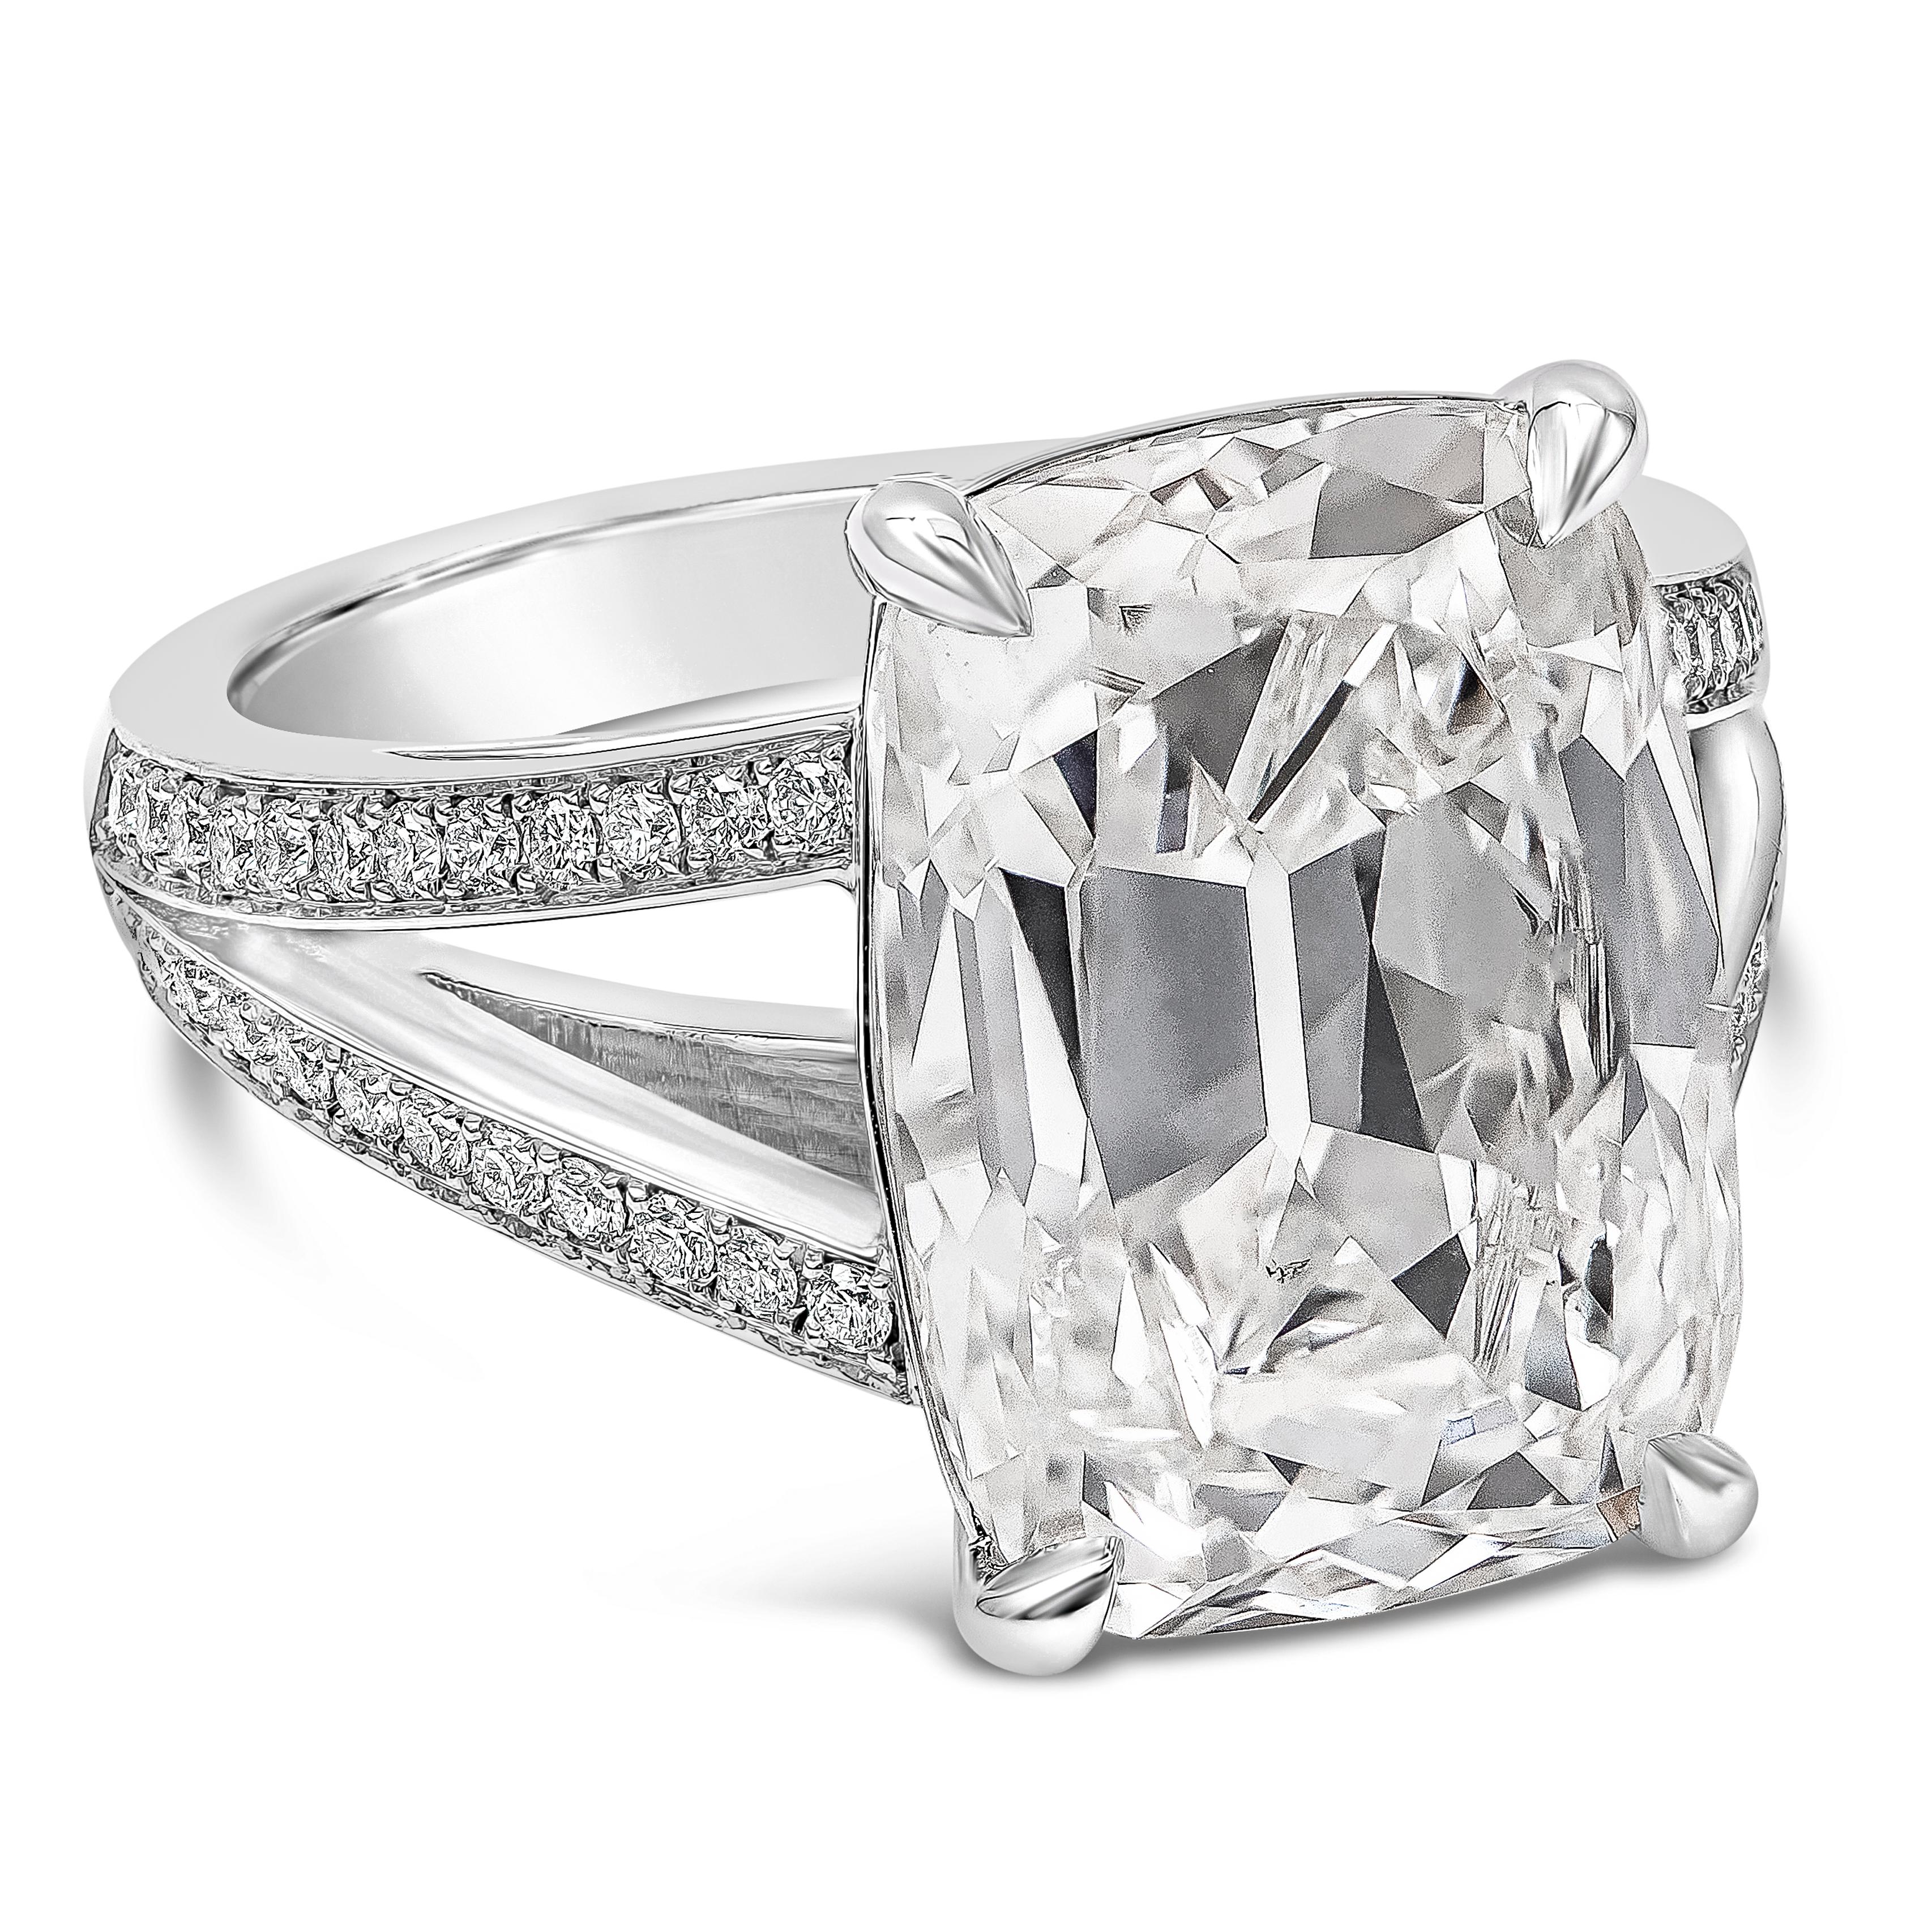 Ein wunderschöner Verlobungsring mit einem GIA-zertifizierten Diamanten von 10,09 Karat im länglichen Kissenschliff, Farbe I und Reinheit SI1. Der zentrale Diamant ist in vier Zacken und einer handgefertigten Fassung mit geteiltem Schaft gefasst,